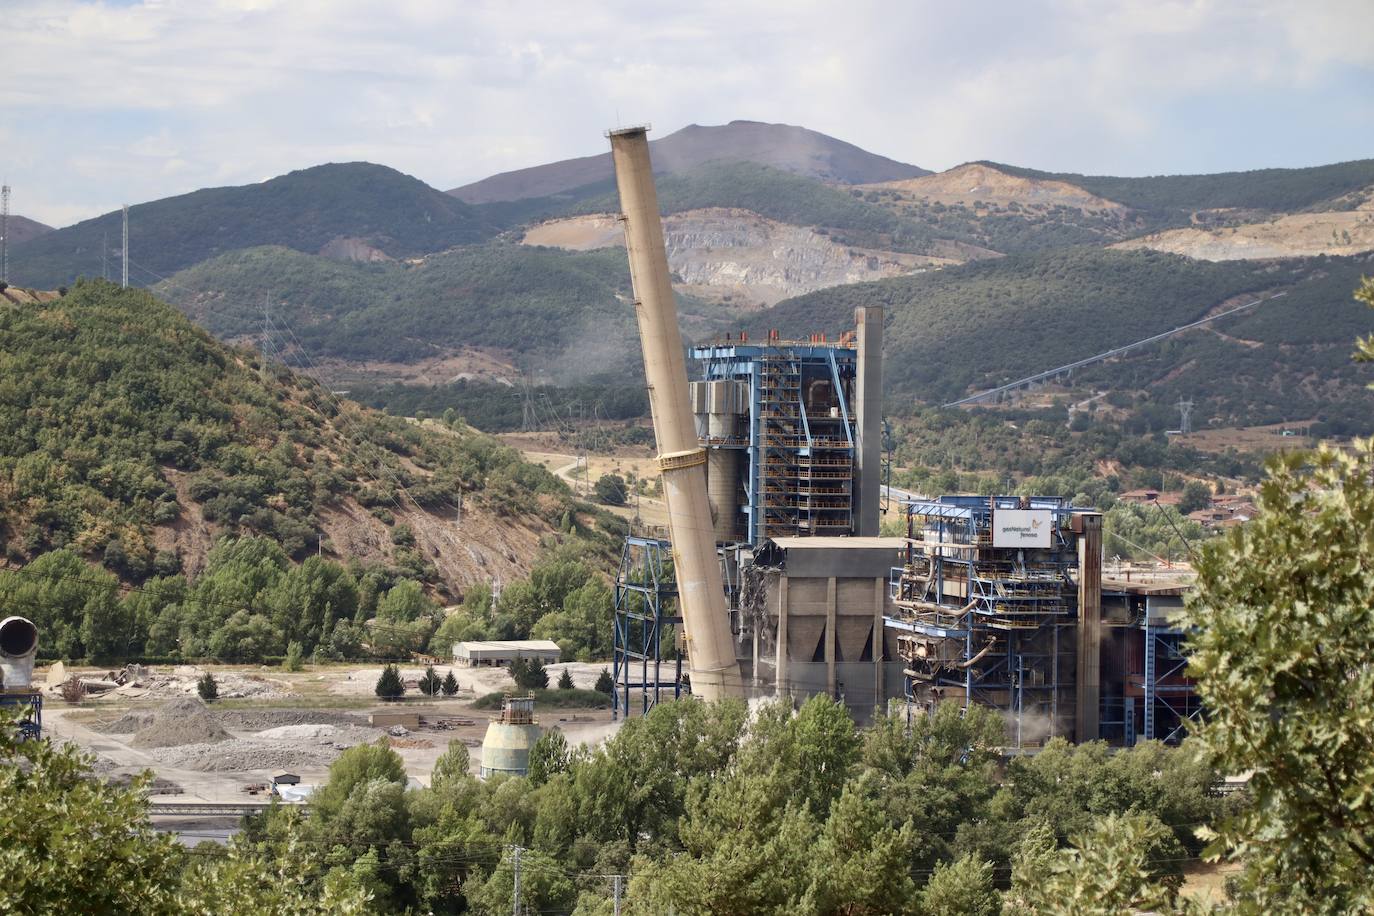 El derribo de la última chimenea de la central térmica roblana pone fin definitivamente a una era en la Montaña Central leonesa